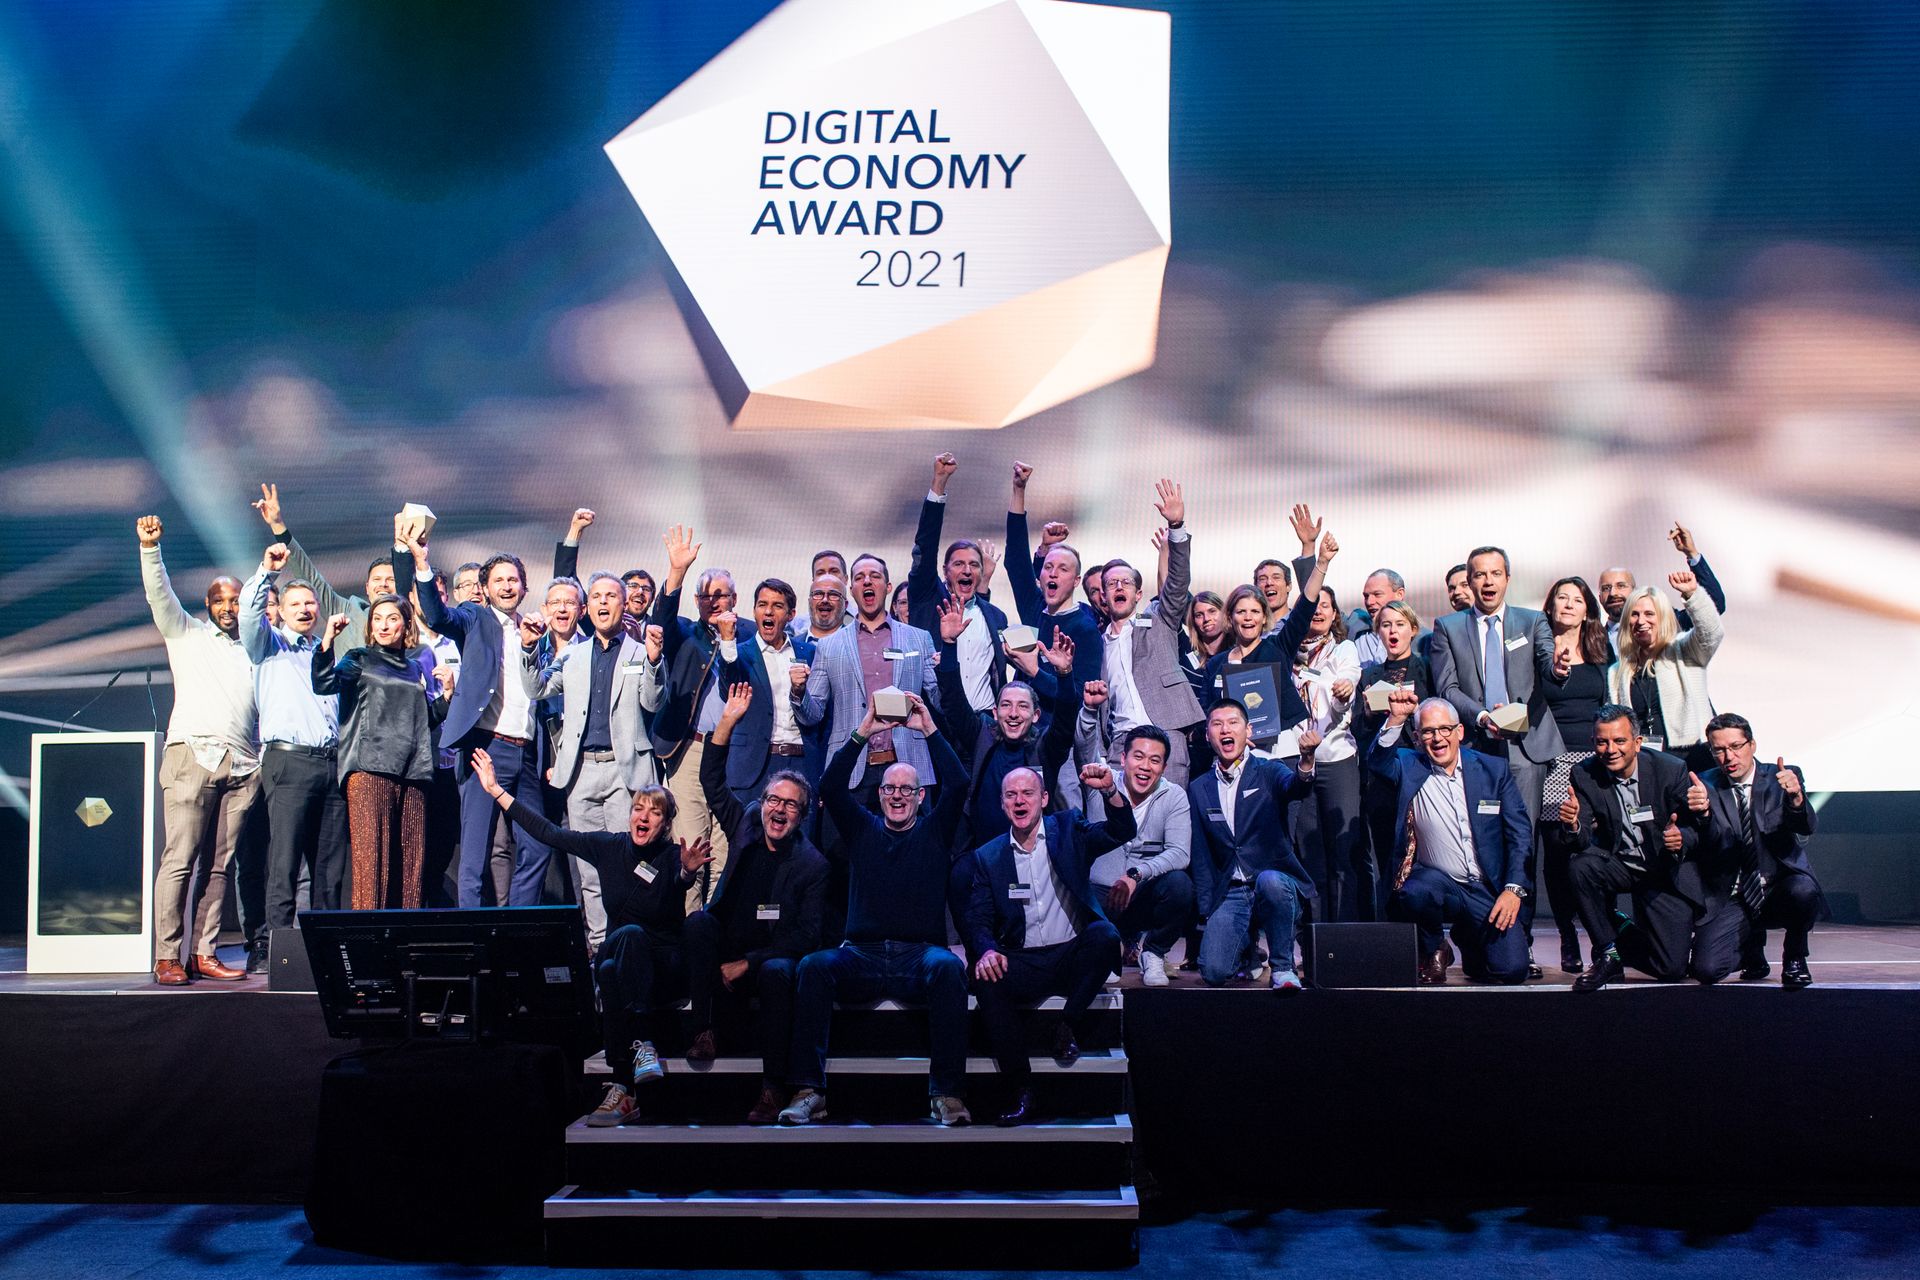 جميع الفائزين في حفل "جائزة الاقتصاد الرقمي" بمناسبة "اليوم الرقمي سويسرا" في 10 نوفمبر 2021